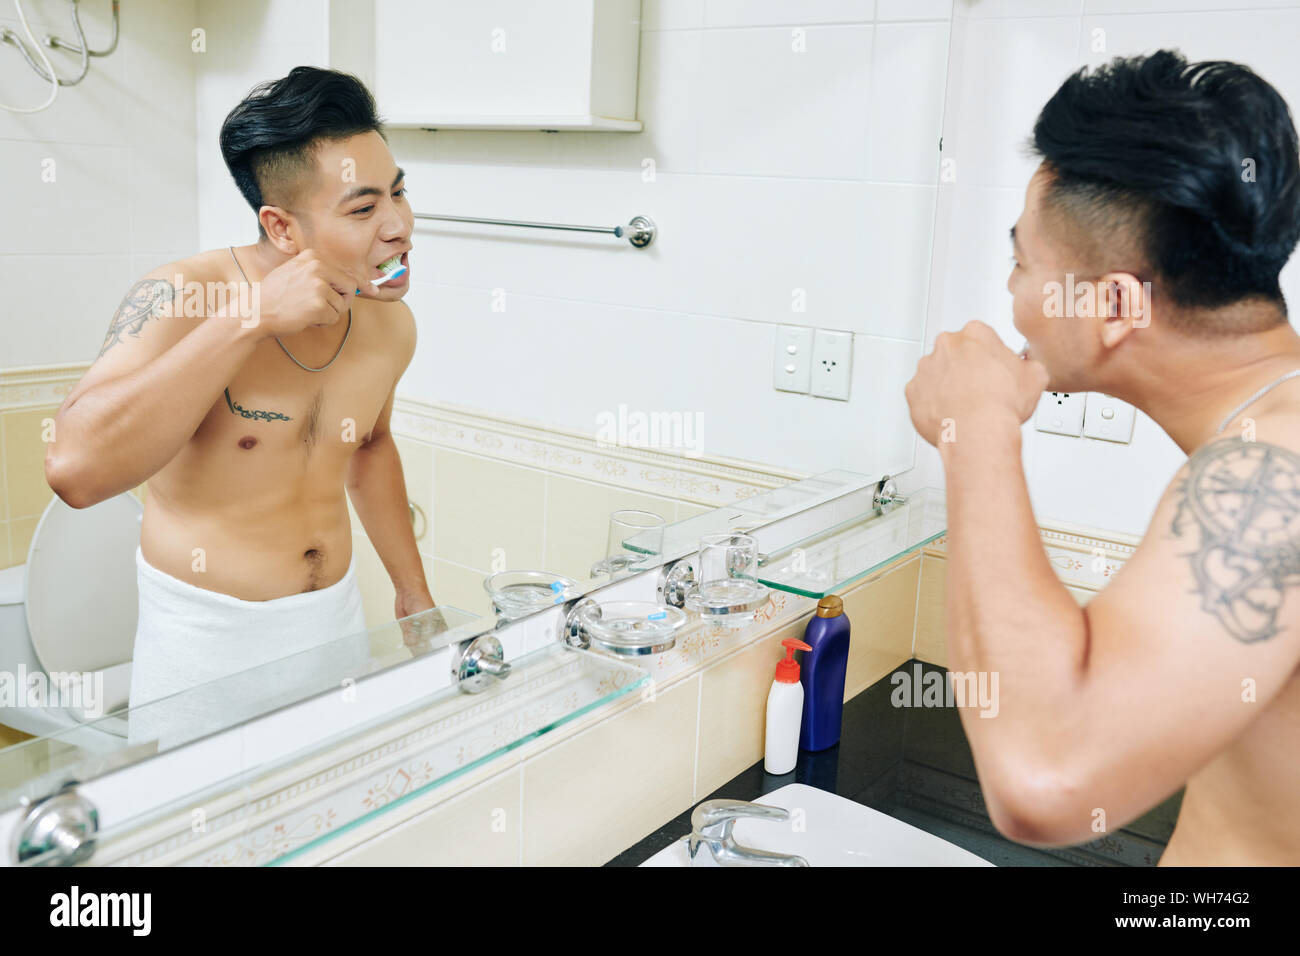 Jeune homme vietnamien enveloppé dans une serviette après la douche se brosser les dents en face de miroir dans salle de bains Banque D'Images